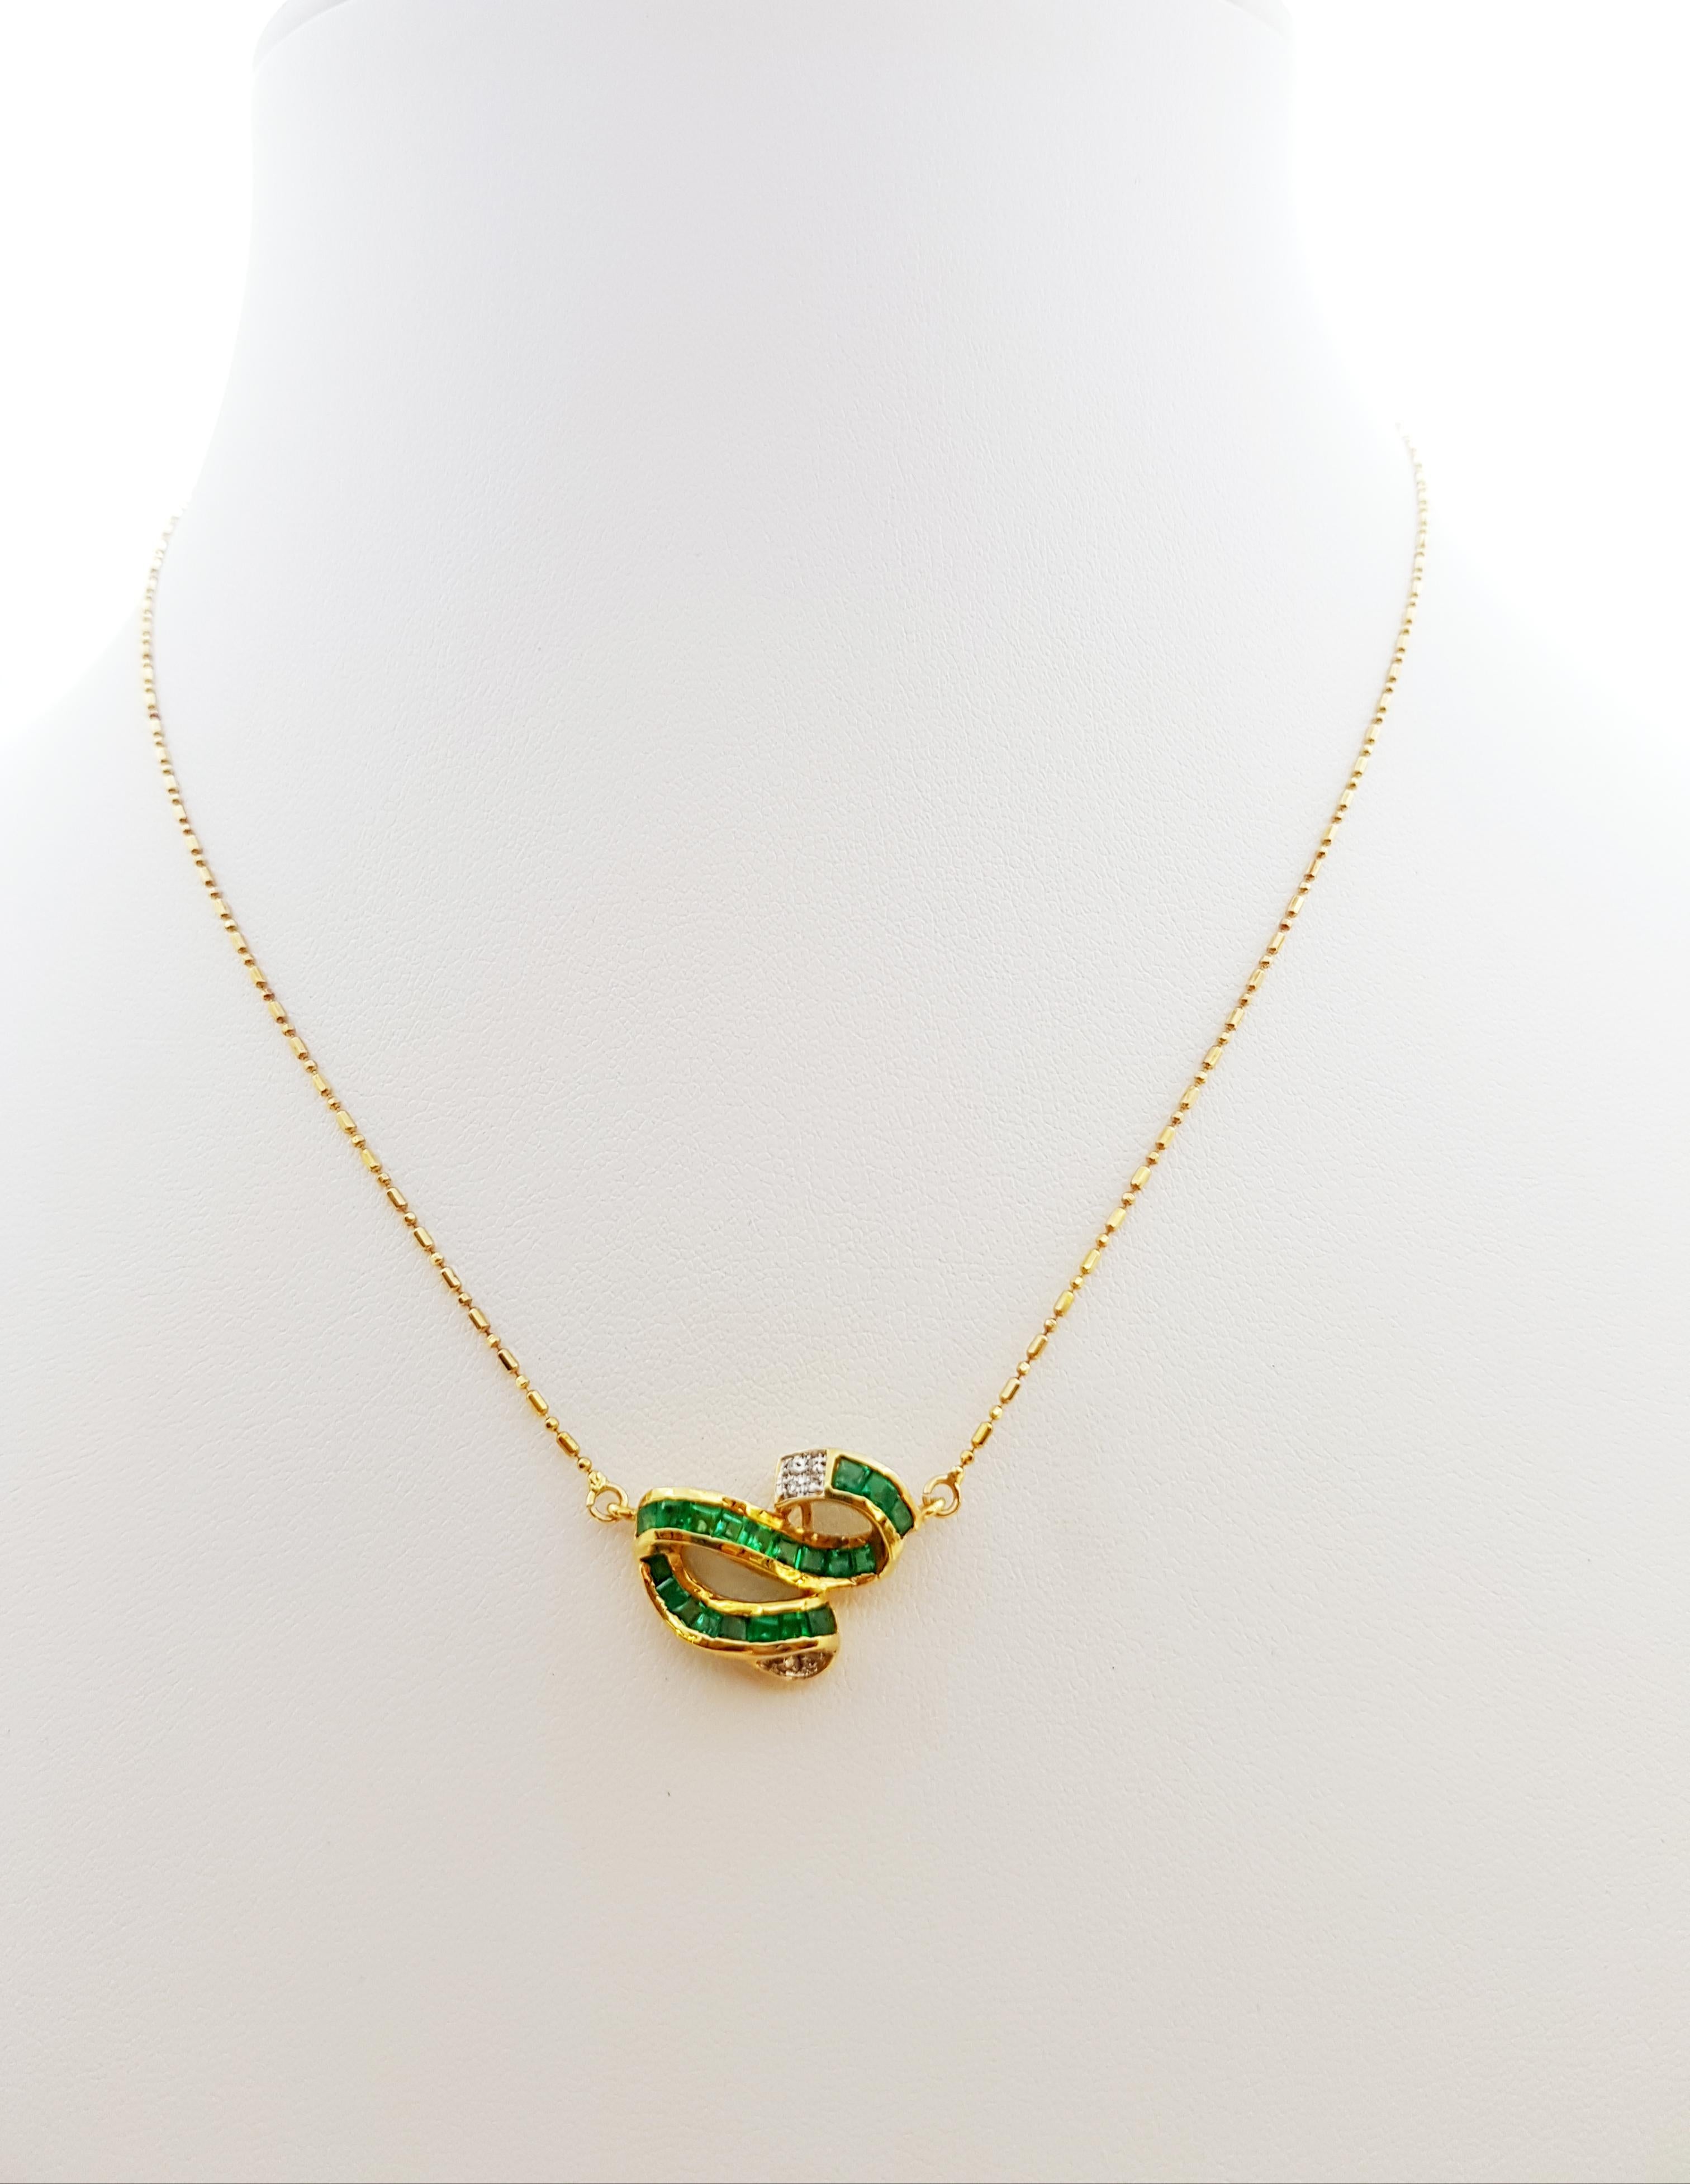 Smaragd 1,10 Karat mit Diamant 0,03 Karat Halskette in 18 Karat Goldfassung

Breite: 1,5 cm 
Länge: 43,5 cm
Gesamtgewicht: 5,09 Gramm

